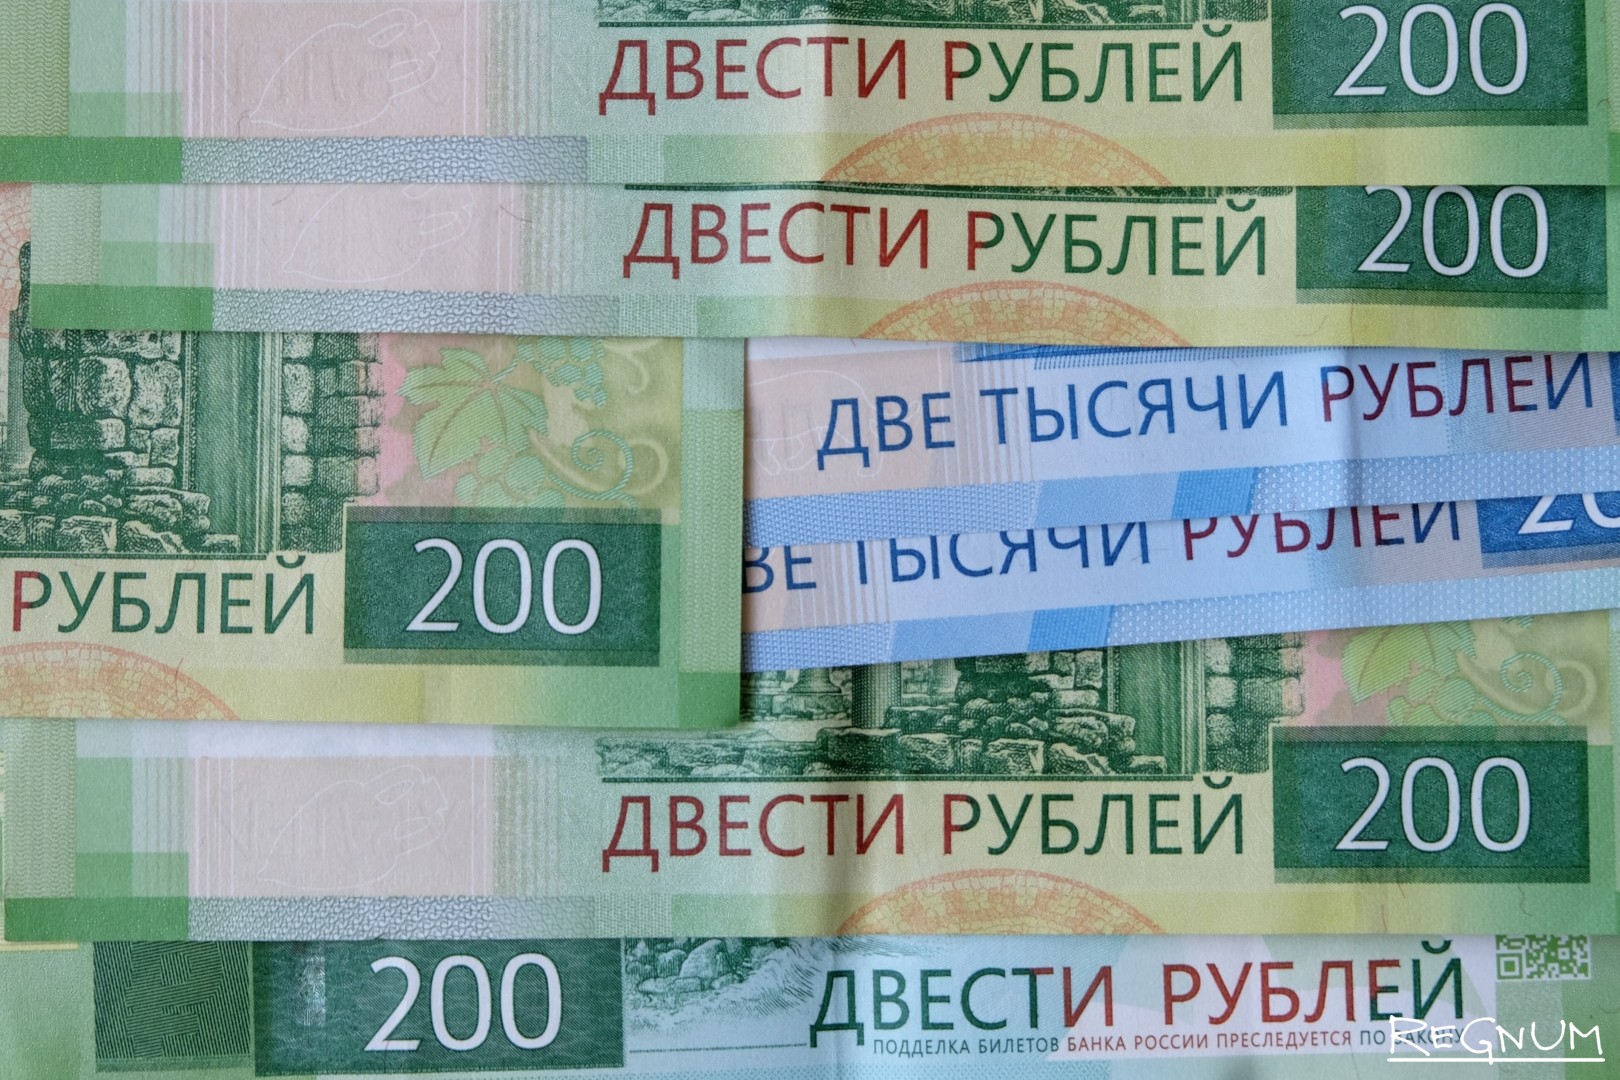 15 от 200 рублей. Двесте или двести рублей. 200 Руб в лей. Двести рублей.